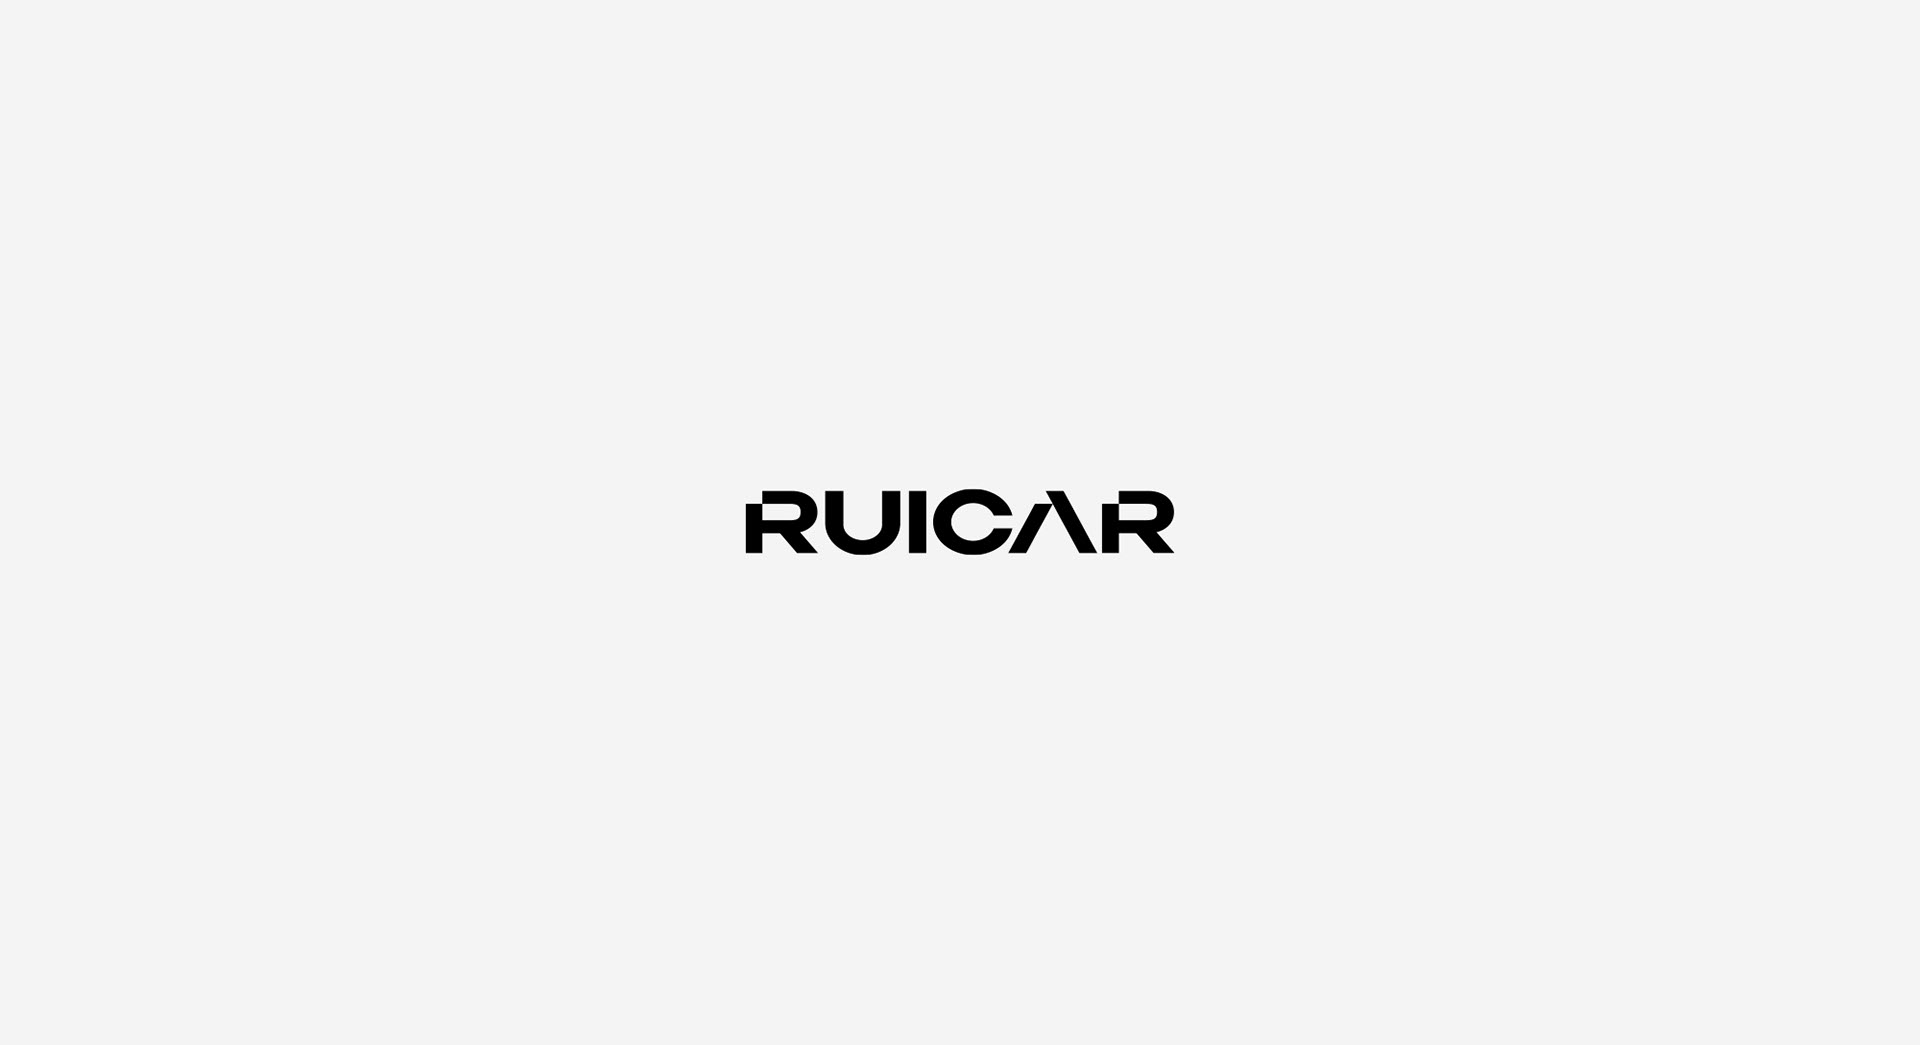 汽车,视觉识别,VI . 巴西Ruicar豪华汽车店品牌视觉识别设计